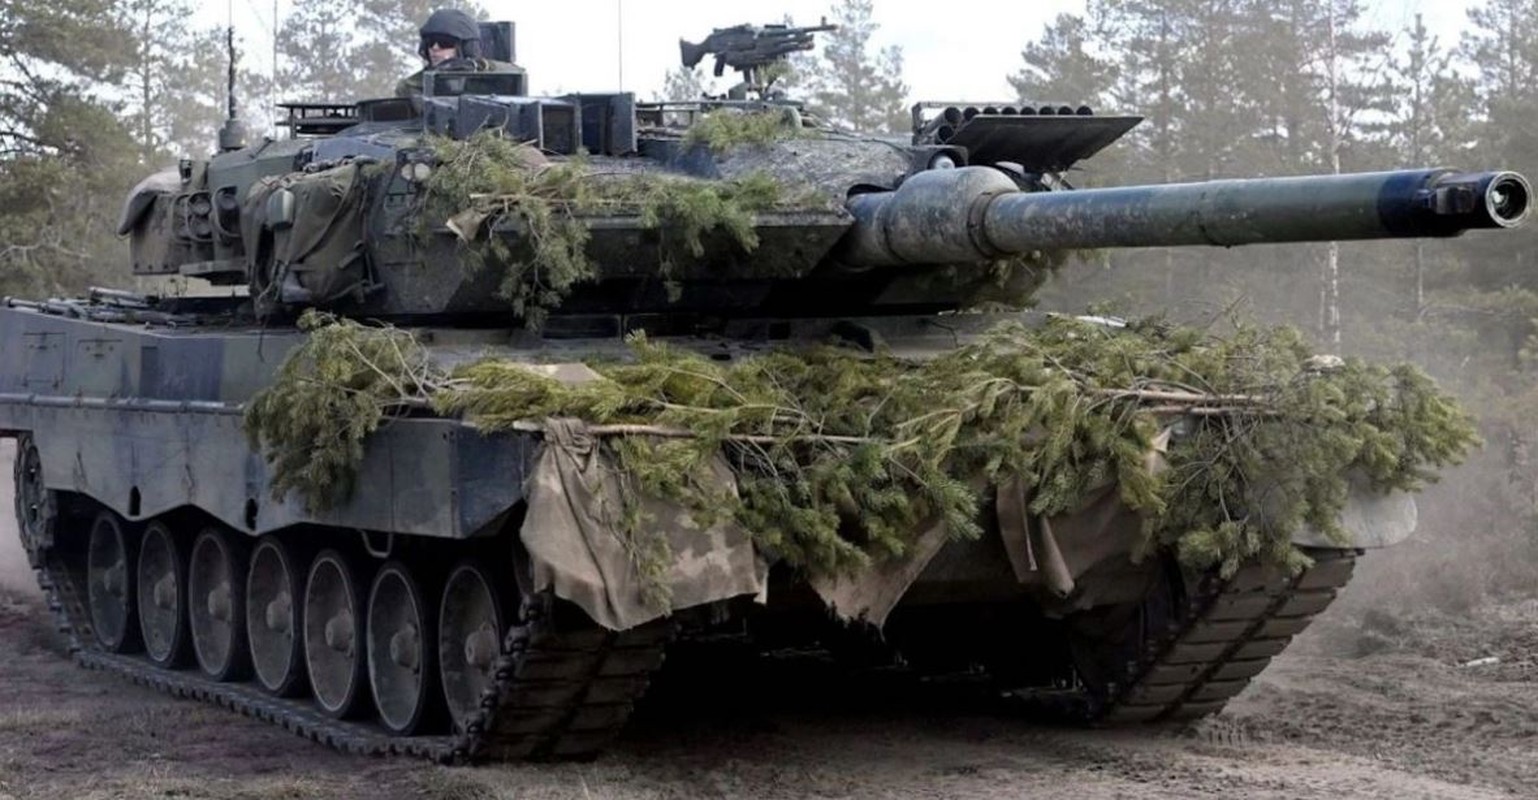 Hoa luc xe BMP-3 co the tieu diet xe tang M1A2 va Leopard?-Hinh-10